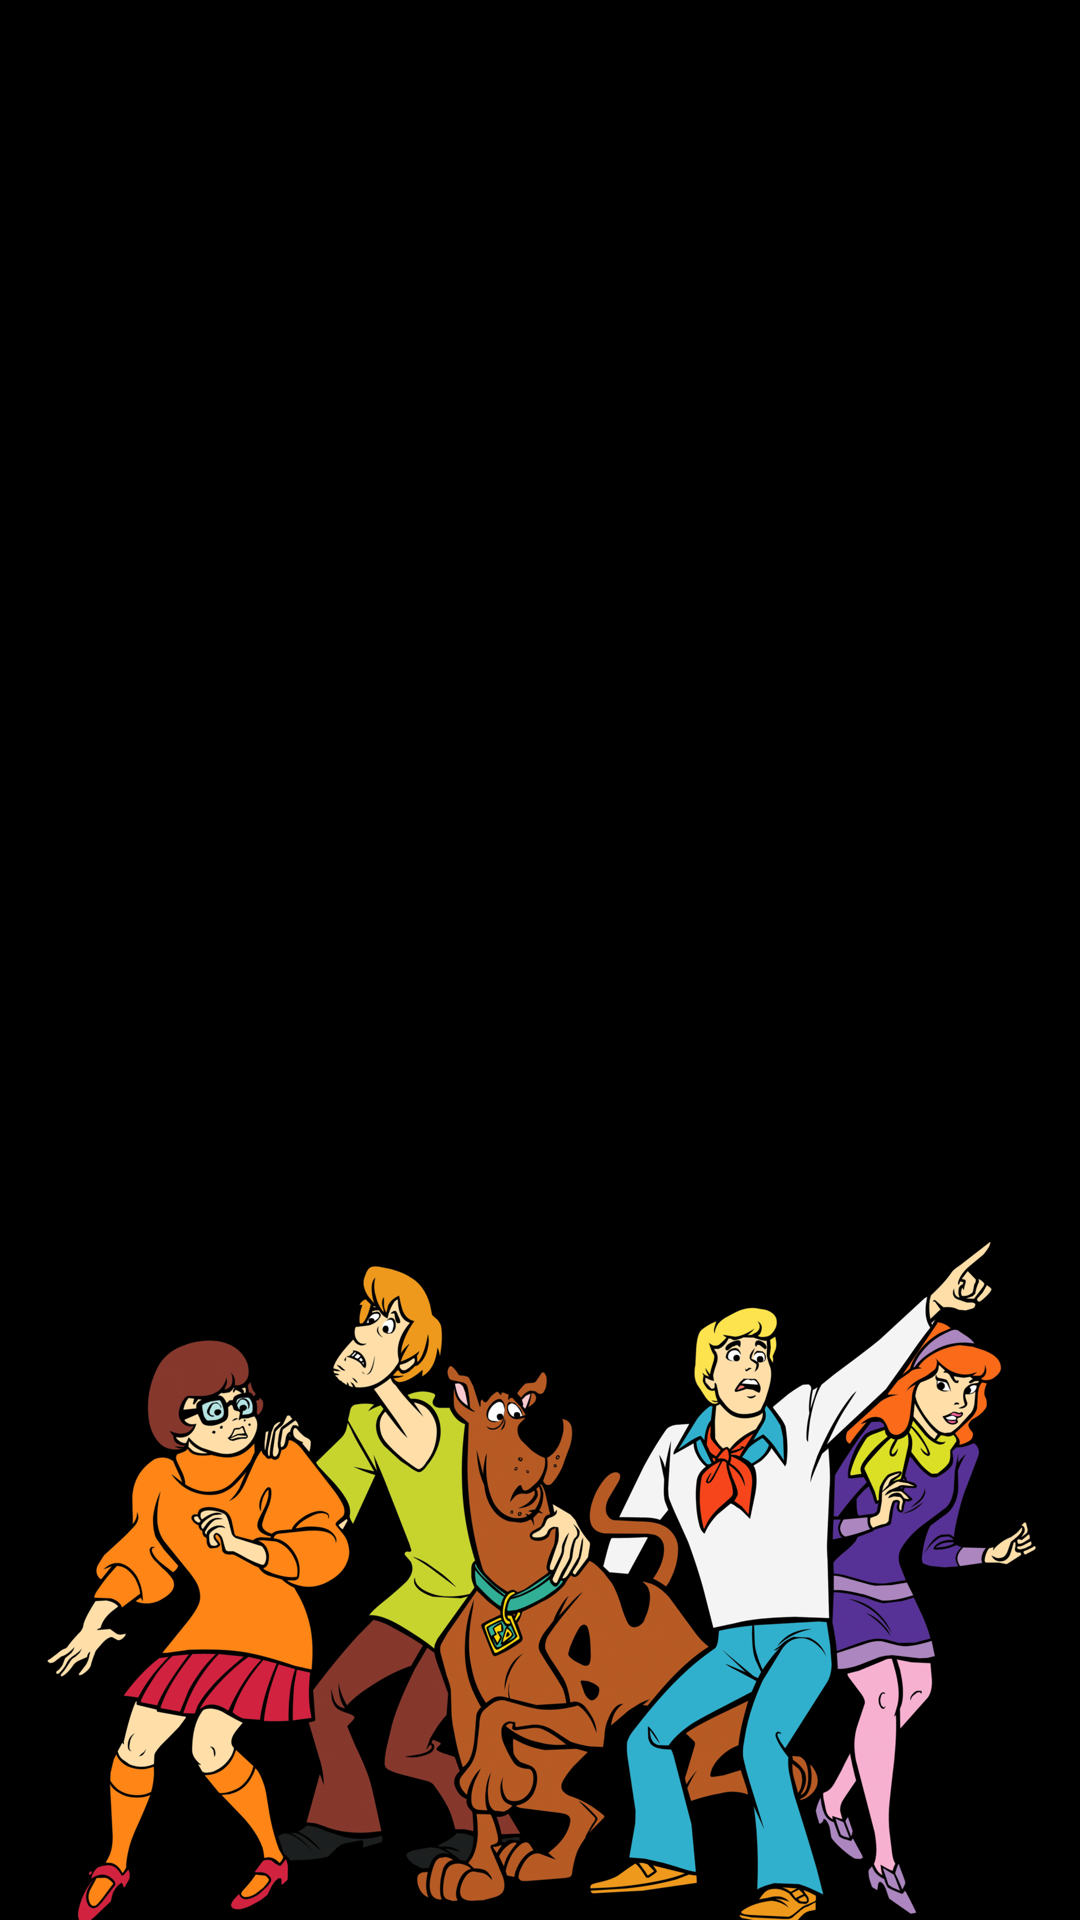  Scooby-Doo Hintergrundbild 1080x1920. iPhone Wallpaper. Scooby doo picture, Scooby doo image, Cartoon wallpaper